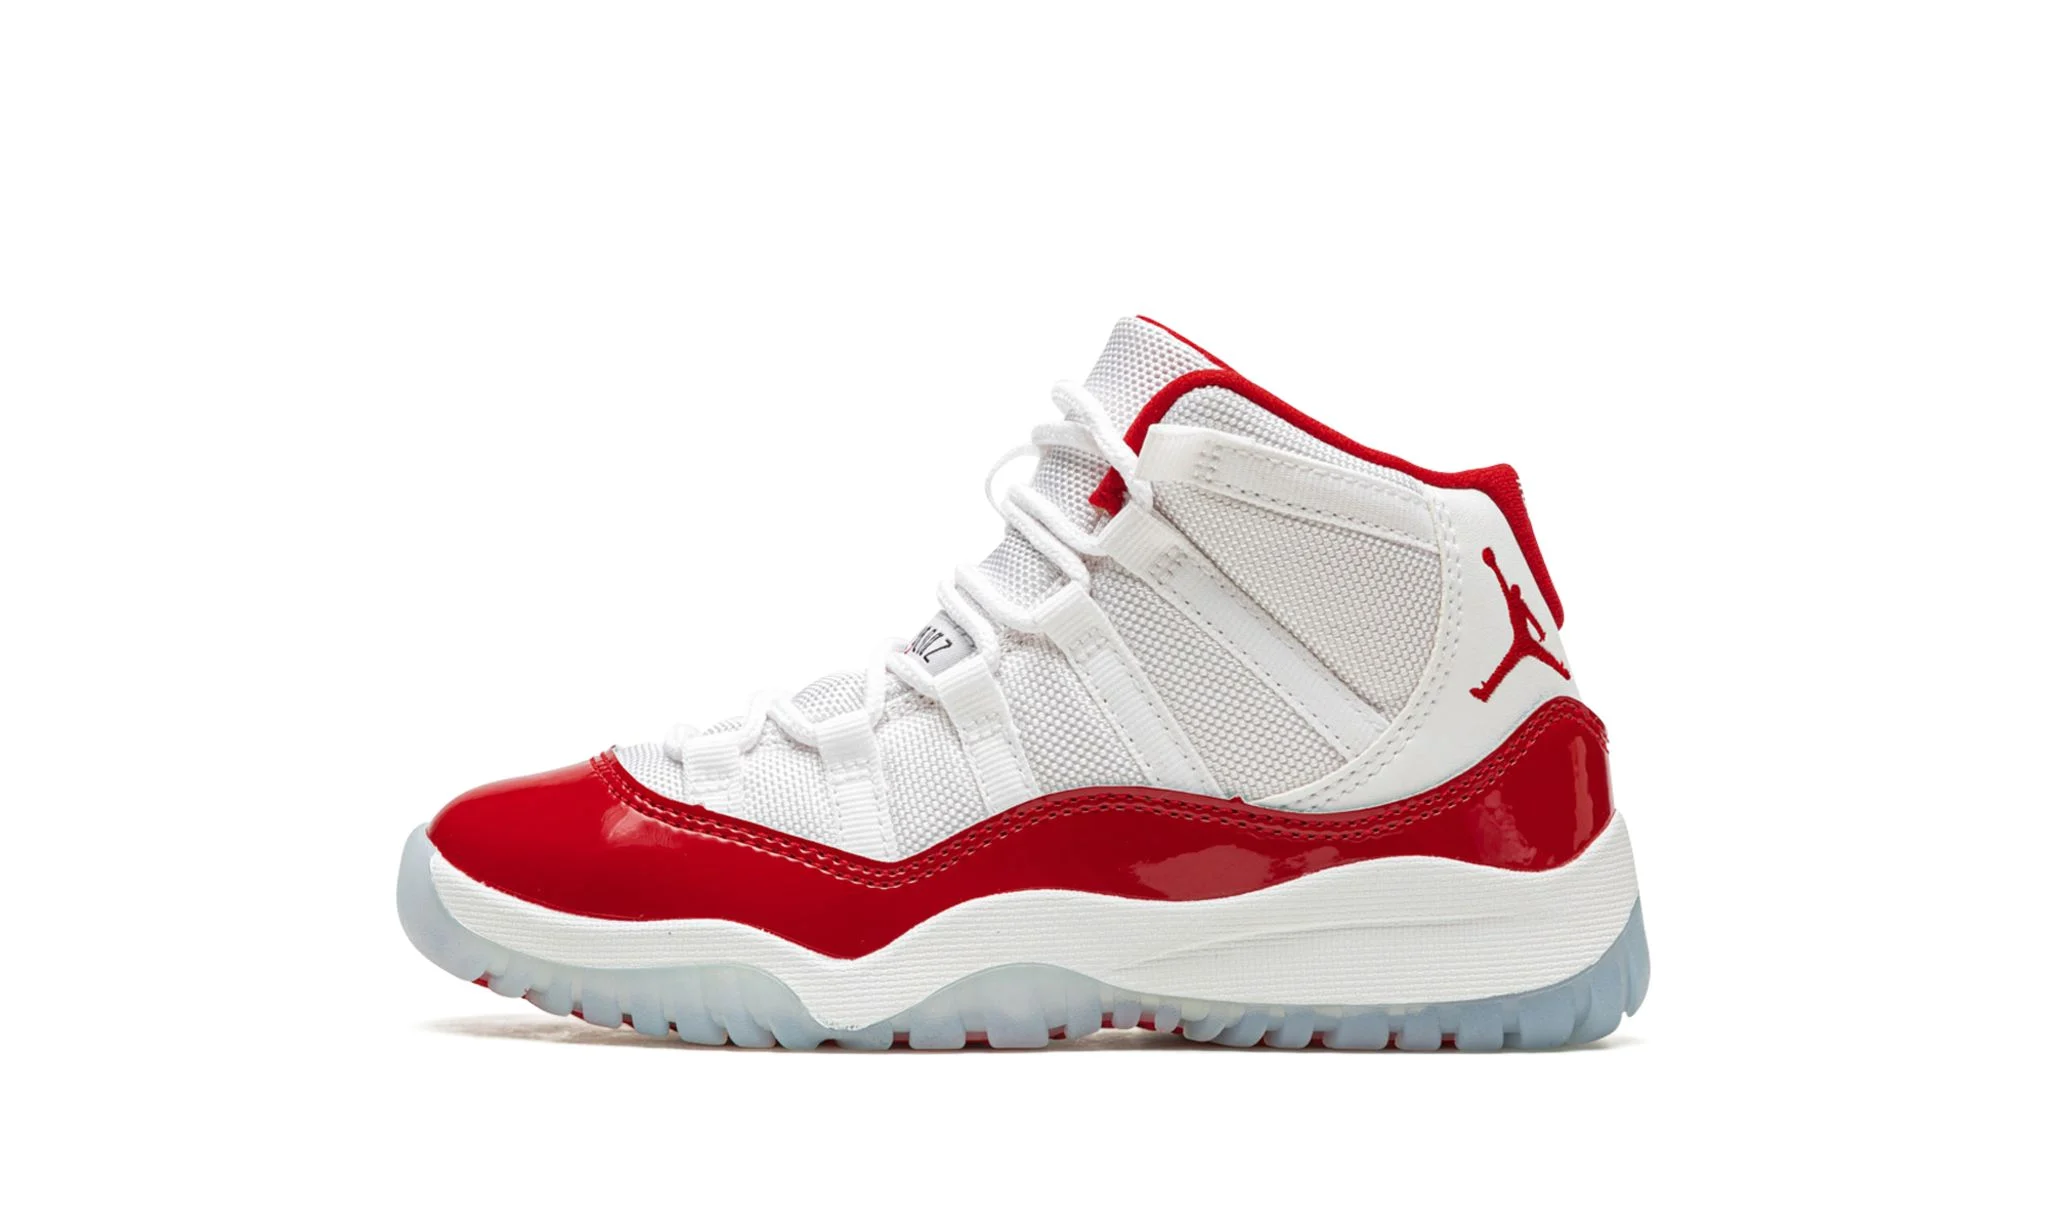 Air Jordan Retro 11 (PS) “Cherry”